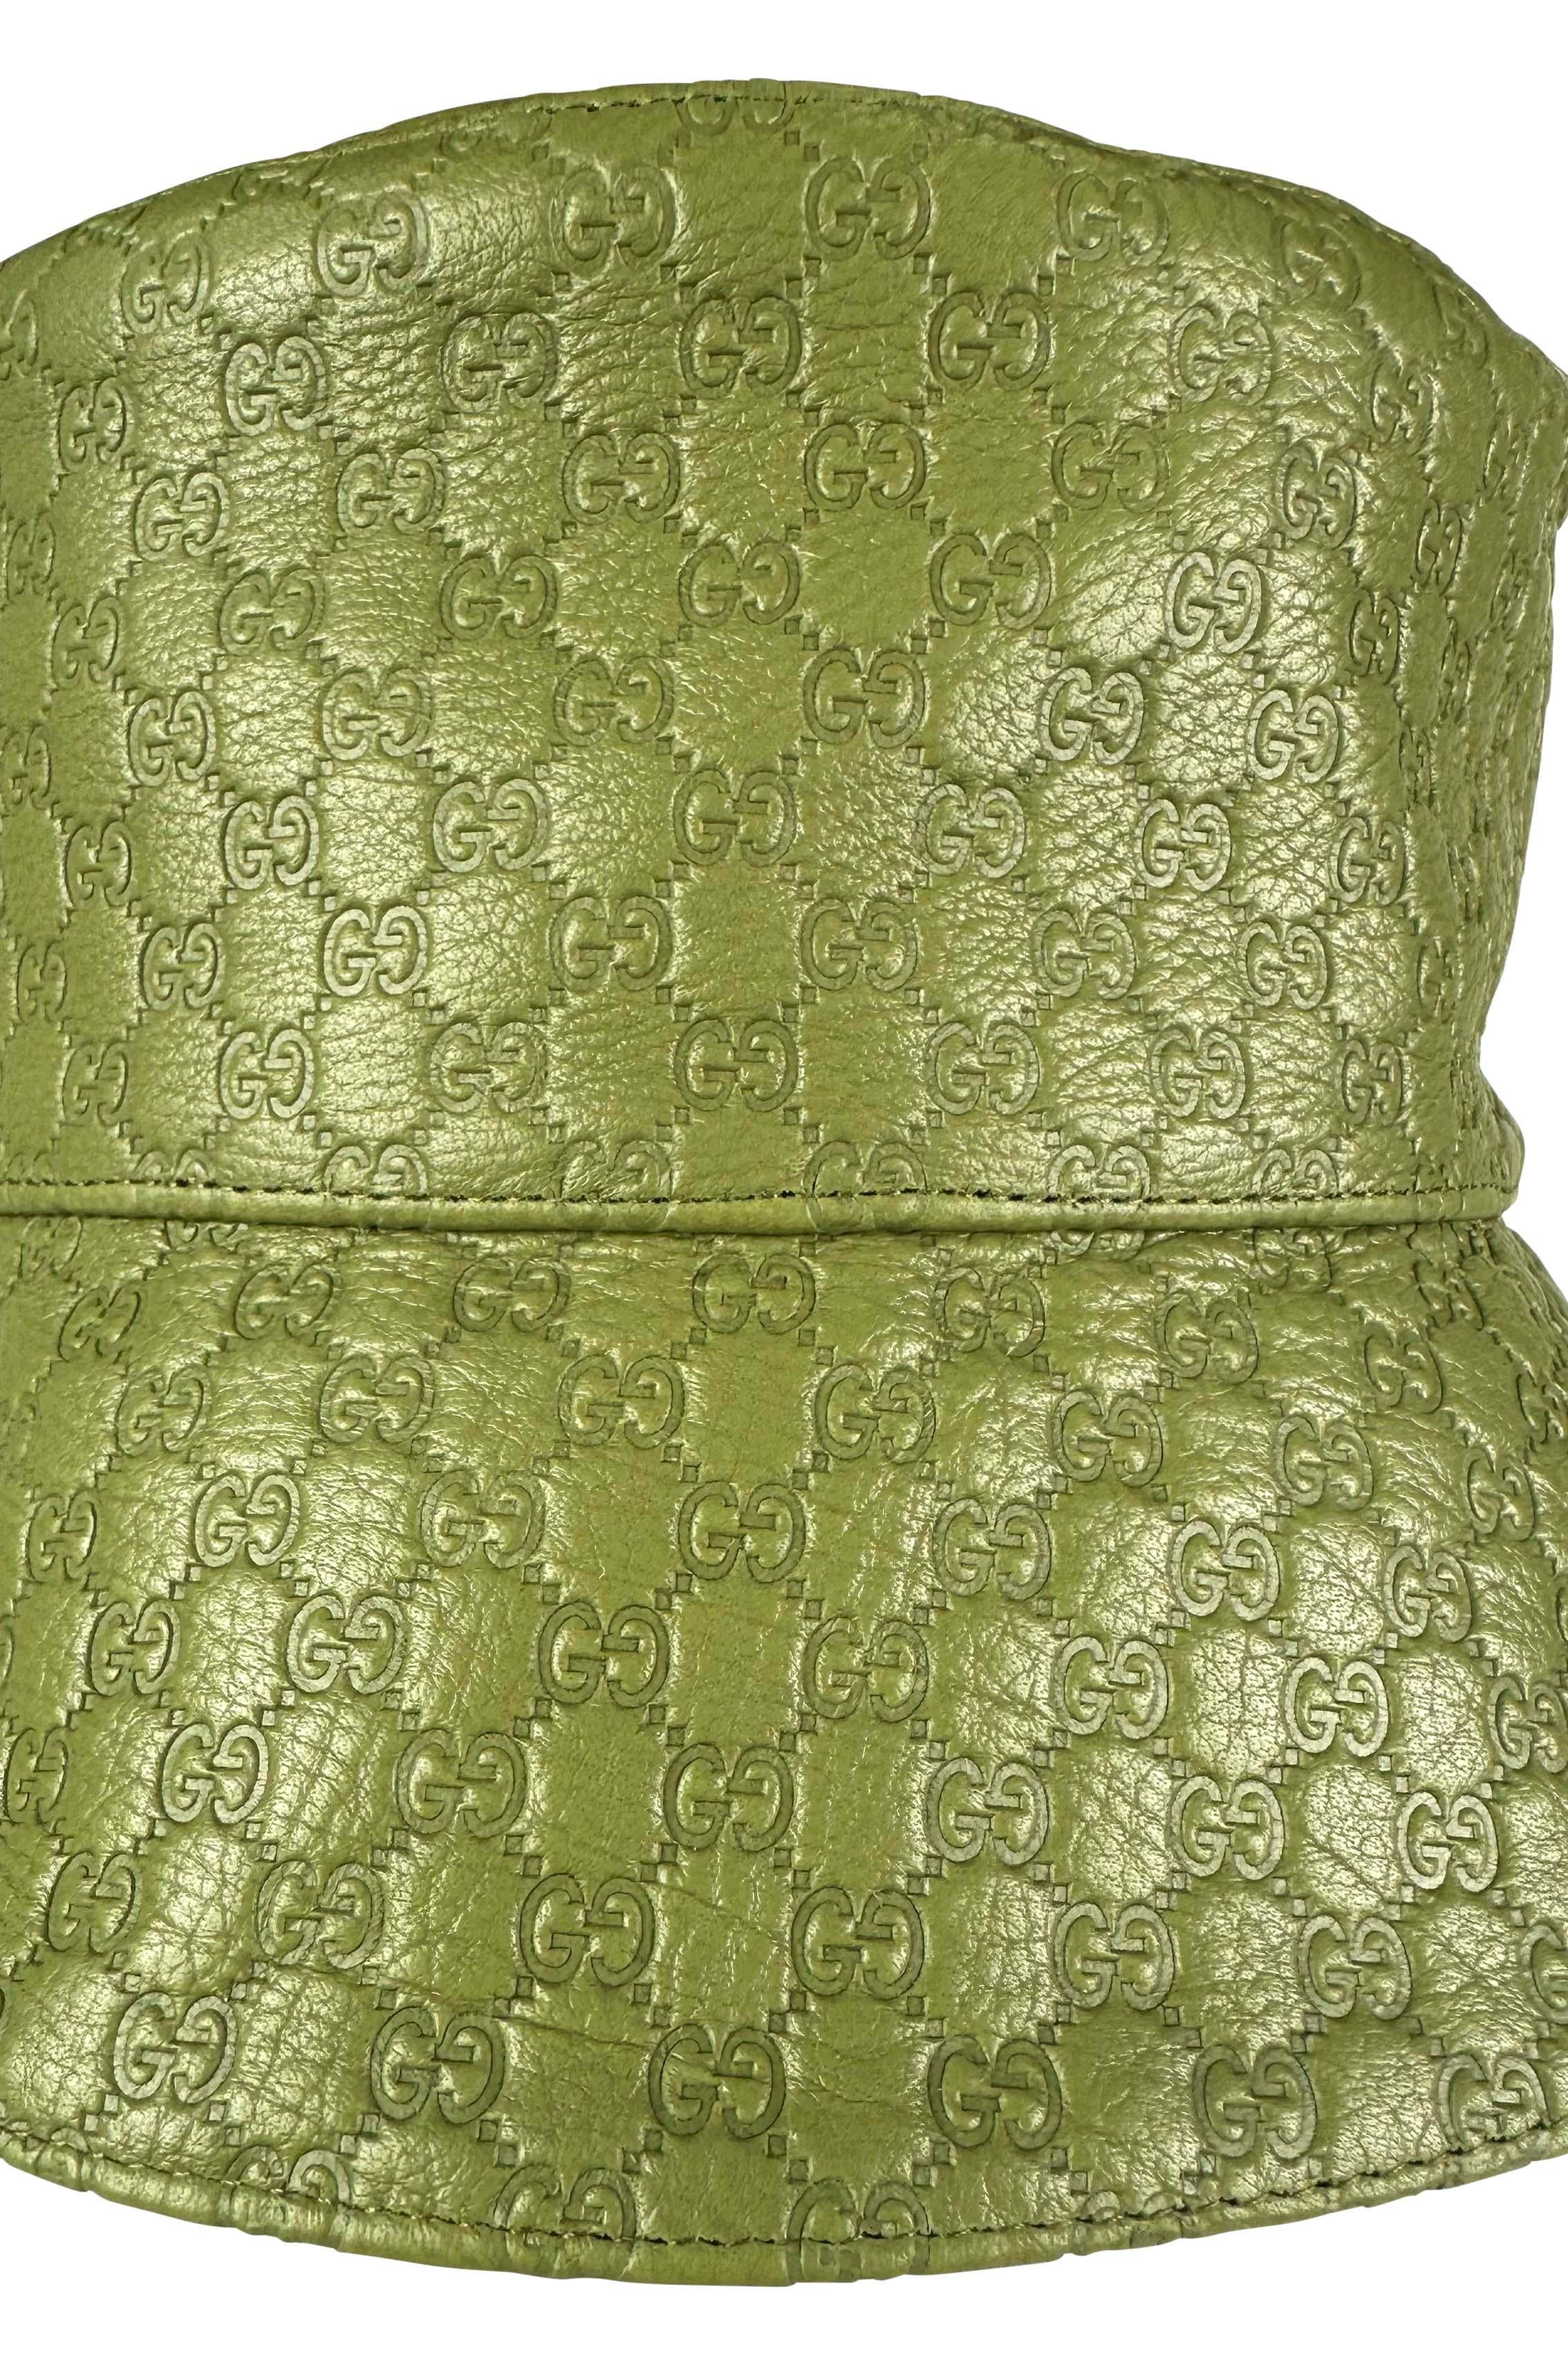 Wir präsentieren einen Gucci Eimerhut aus grünem Leder mit Mikro-